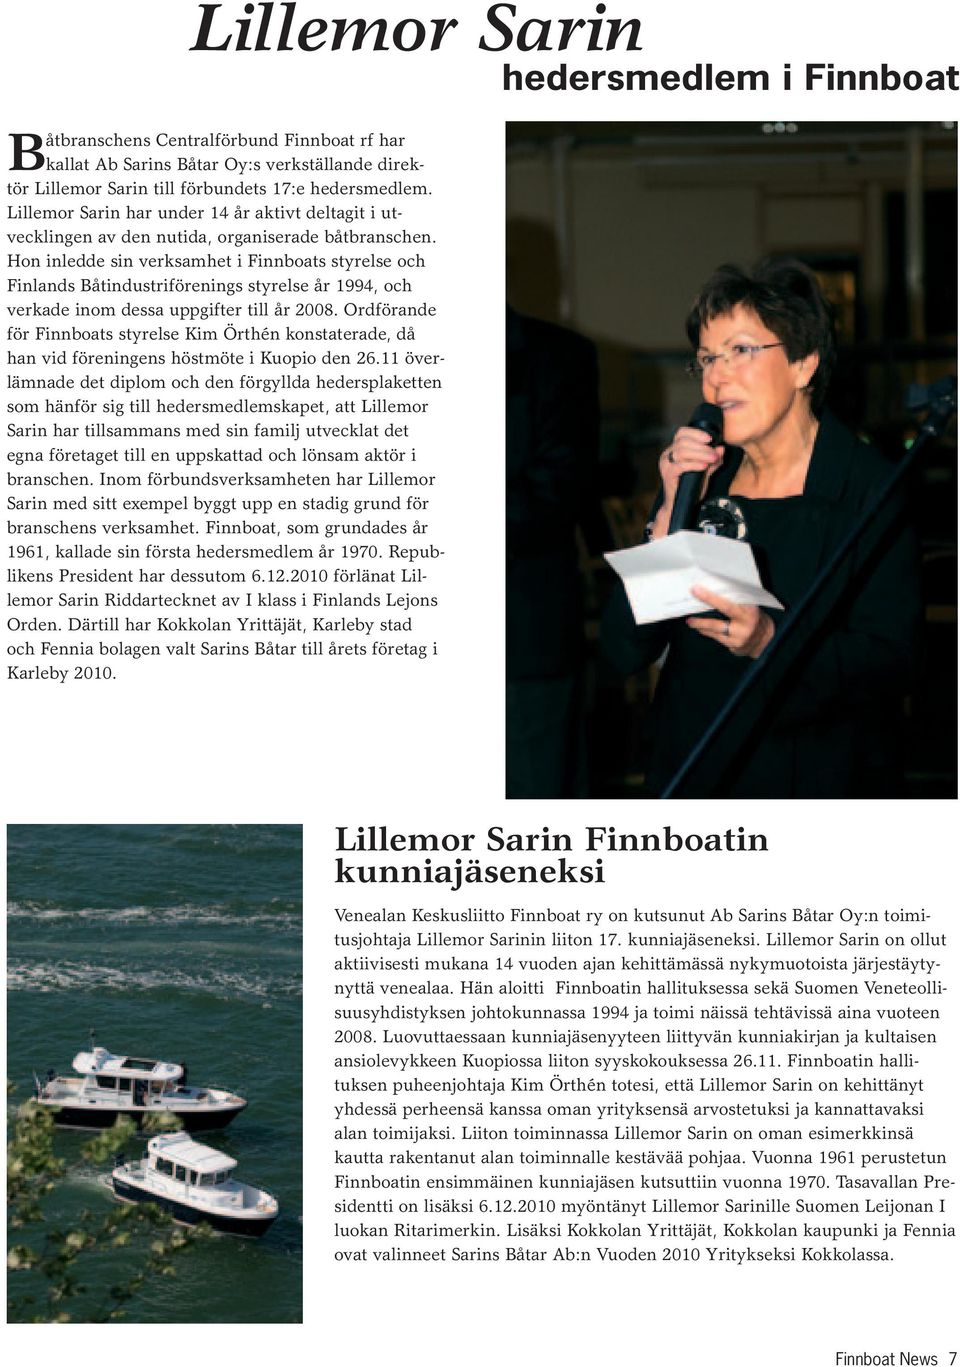 Hon inledde sin verksamhet i Finnboats styrelse och Finlands Båtindustriförenings styrelse år 1994, och verkade inom dessa uppgifter till år 2008.